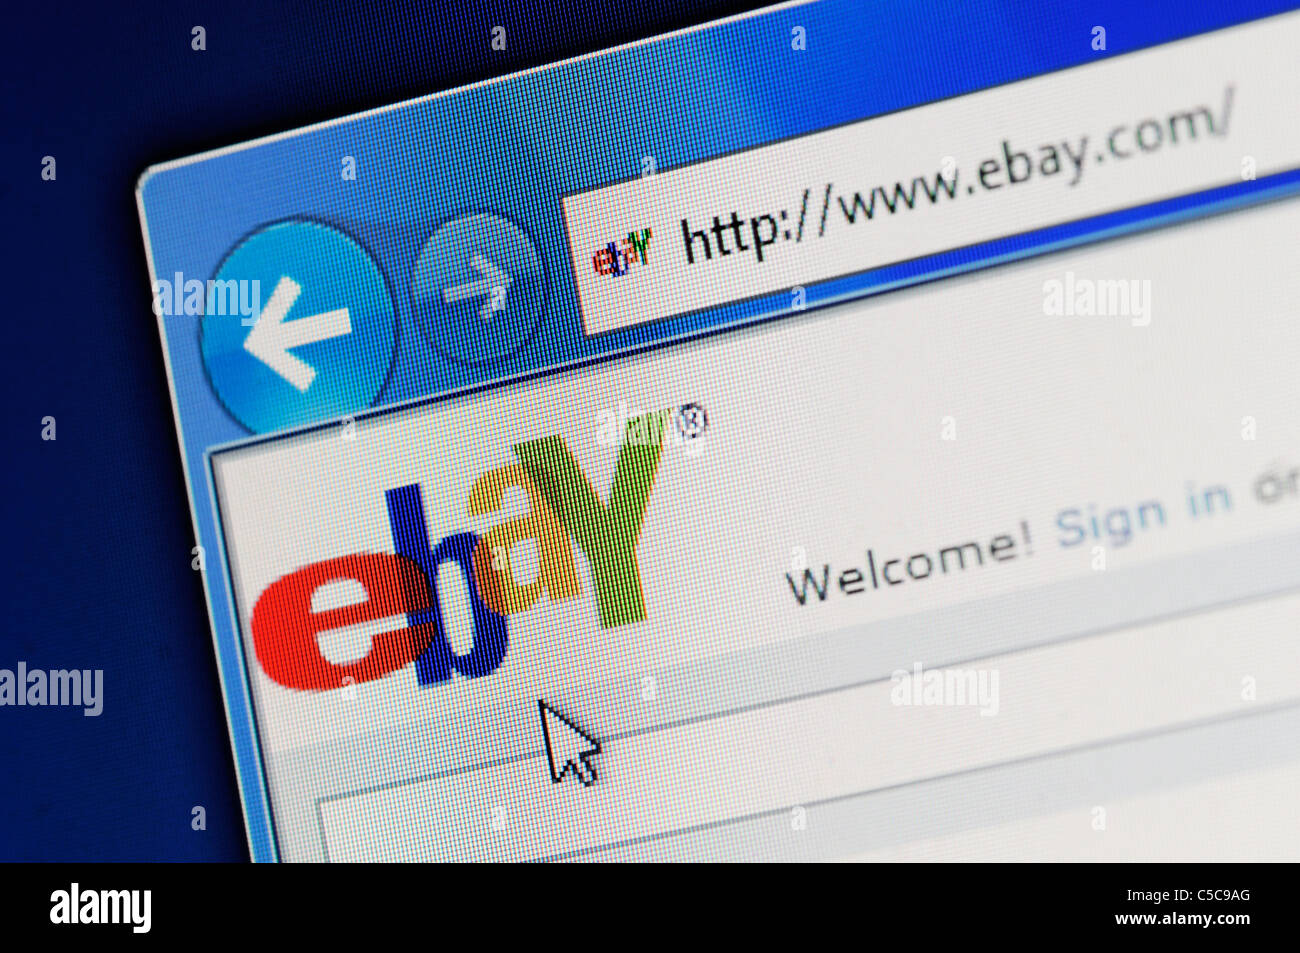 Une partie de site d'ebay dans le navigateur Internet Explorer sur écran LCD. Banque D'Images